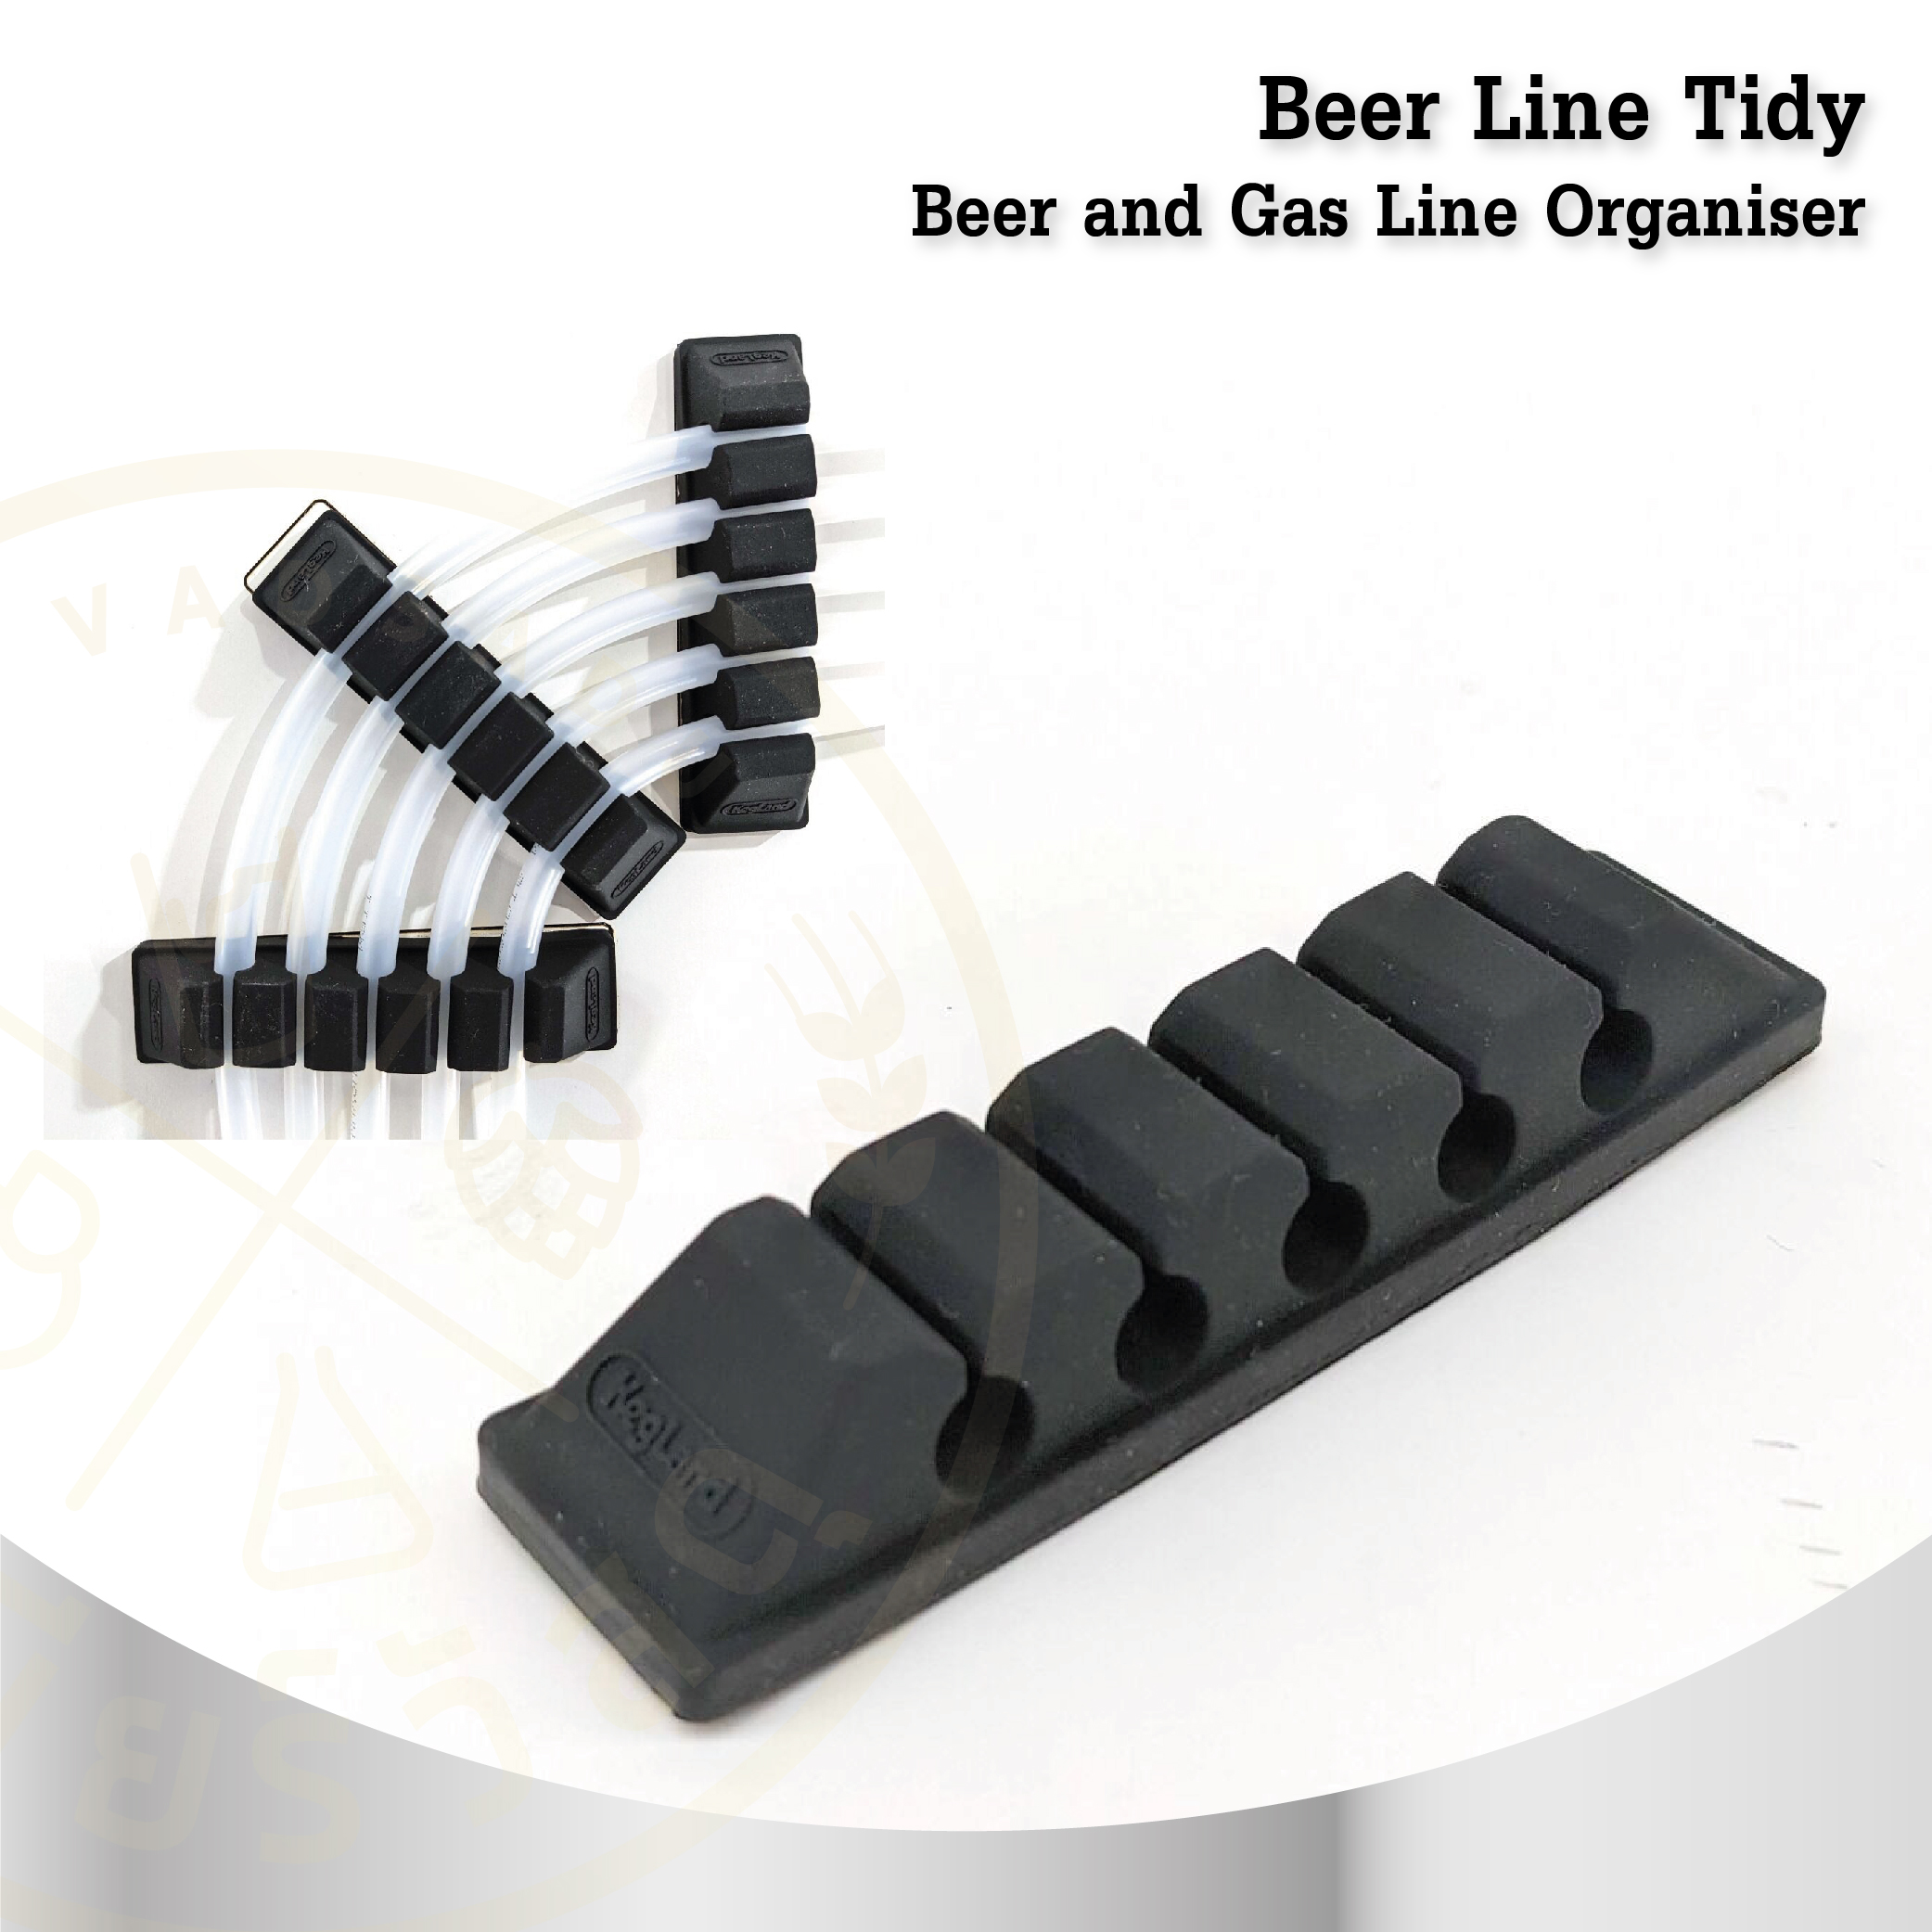 Beer Line Tidy - Beer and Gas Line Organiser